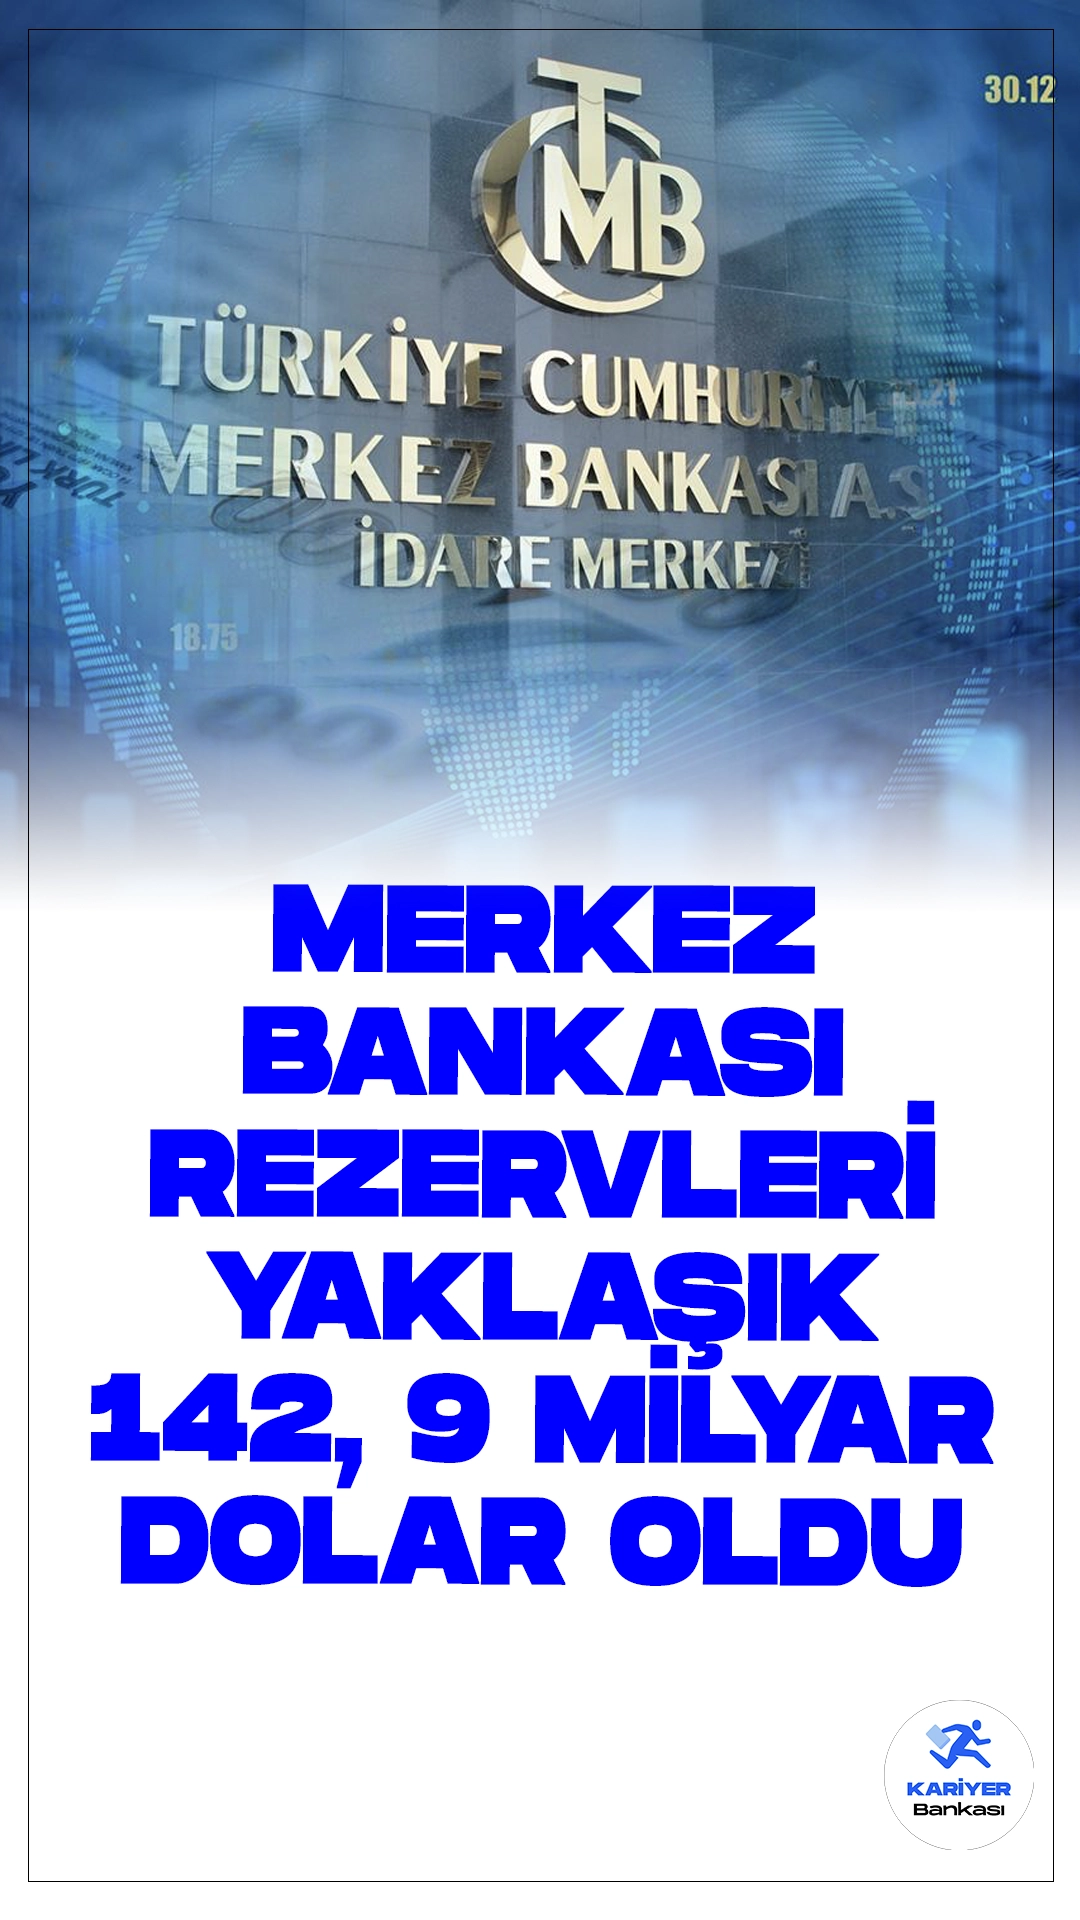 Merkez Bankası Rezervleri 142,9 Milyar Dolar Oldu.Türkiye Cumhuriyet Merkez Bankası (TCMB), 28 Haziran haftası itibarıyla toplam rezervlerinin 4 milyar 712 milyon dolar azalarak 142 milyar 910 milyon dolara gerilediğini açıkladı.